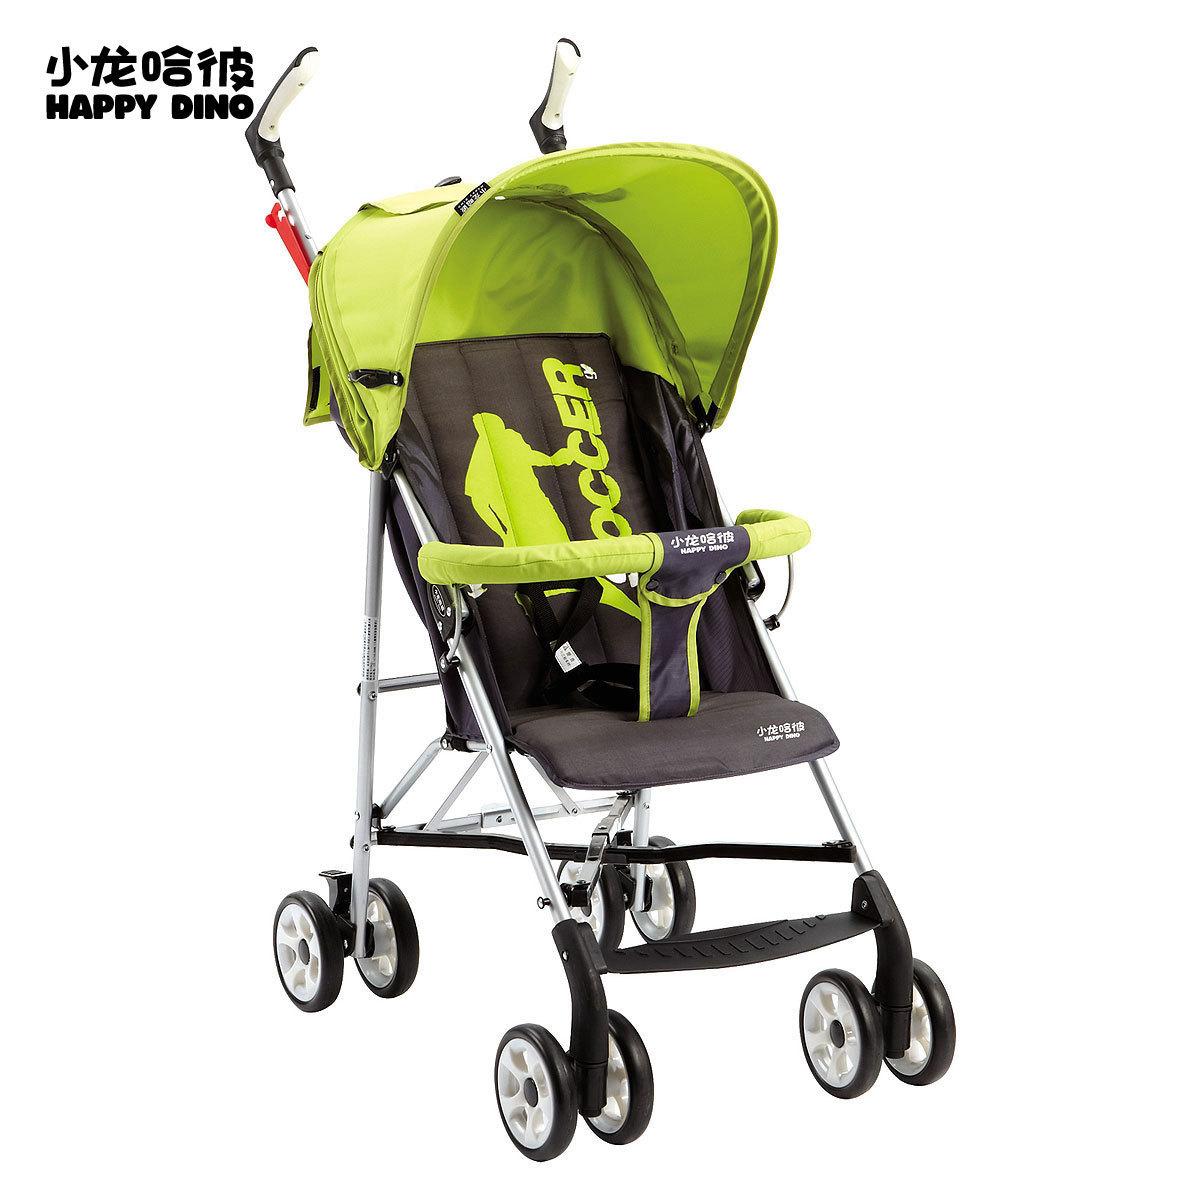 小小恐龙/小龙哈彼 婴儿手推车 折叠童车 可做摇篮椅 LA326T-J072_lishengyu0107